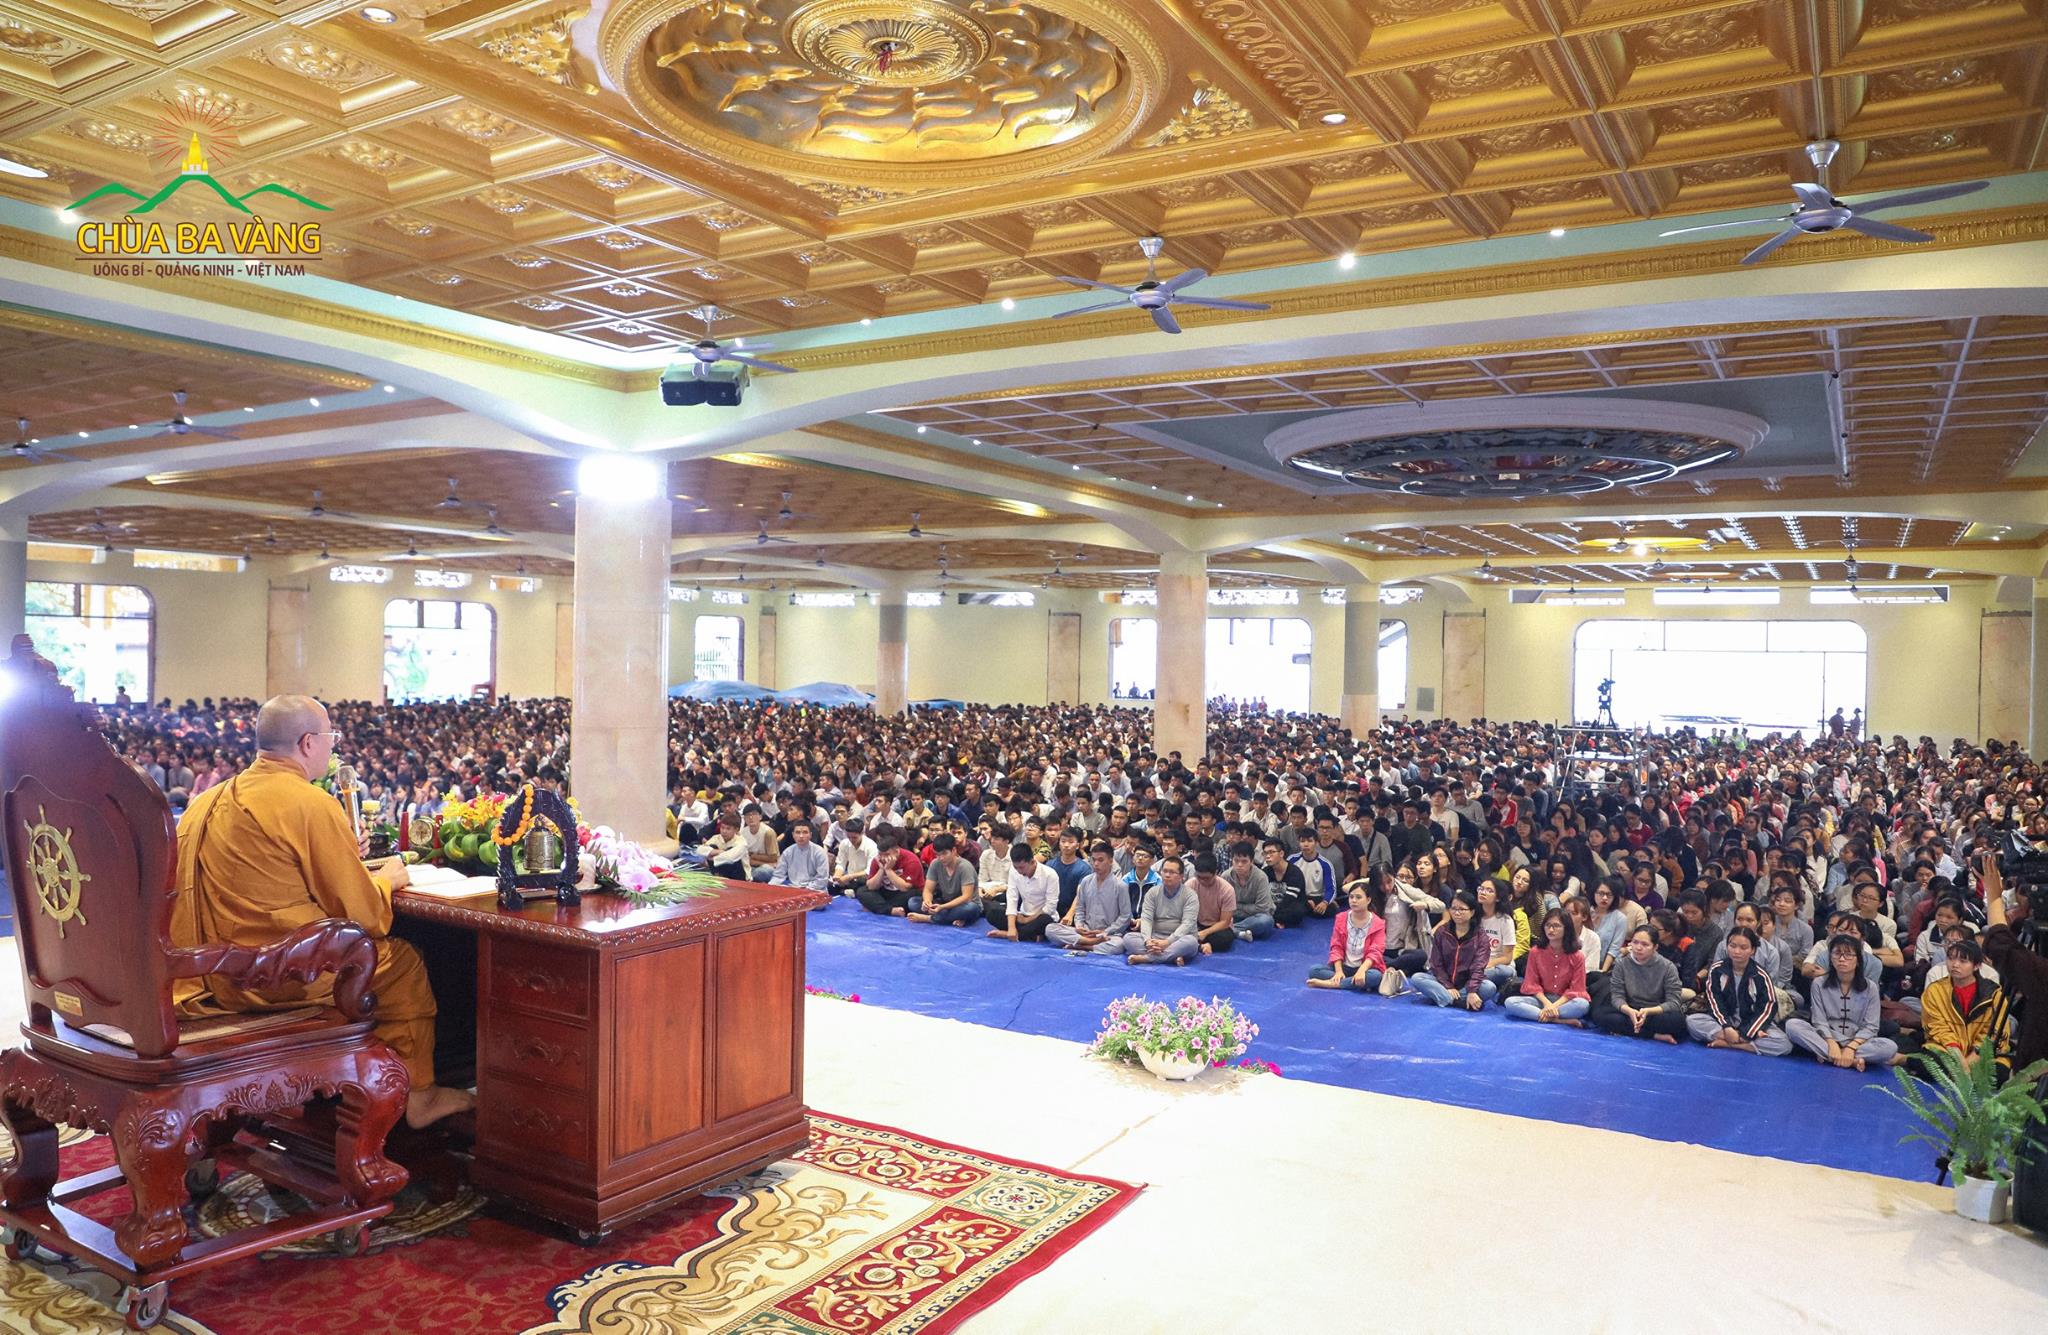 Gần 6000 bạn khóa sinh tham gia khóa tu một ngày tại chùa Ba Vàng